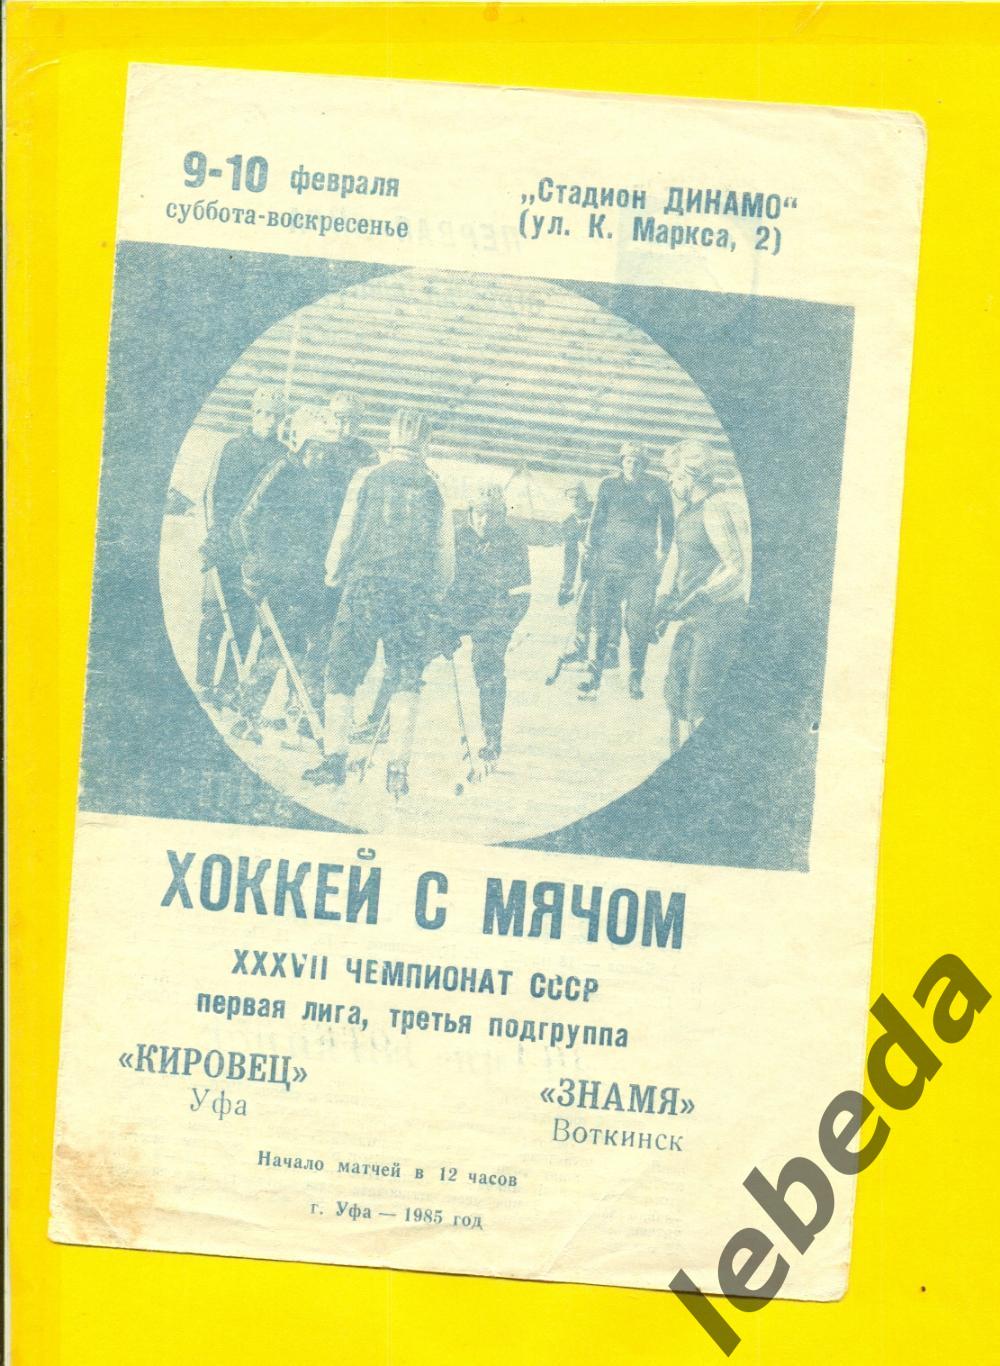 Кировец Уфа - Знамя Воткинск - 1985 г. ( 9-10.02.85.)